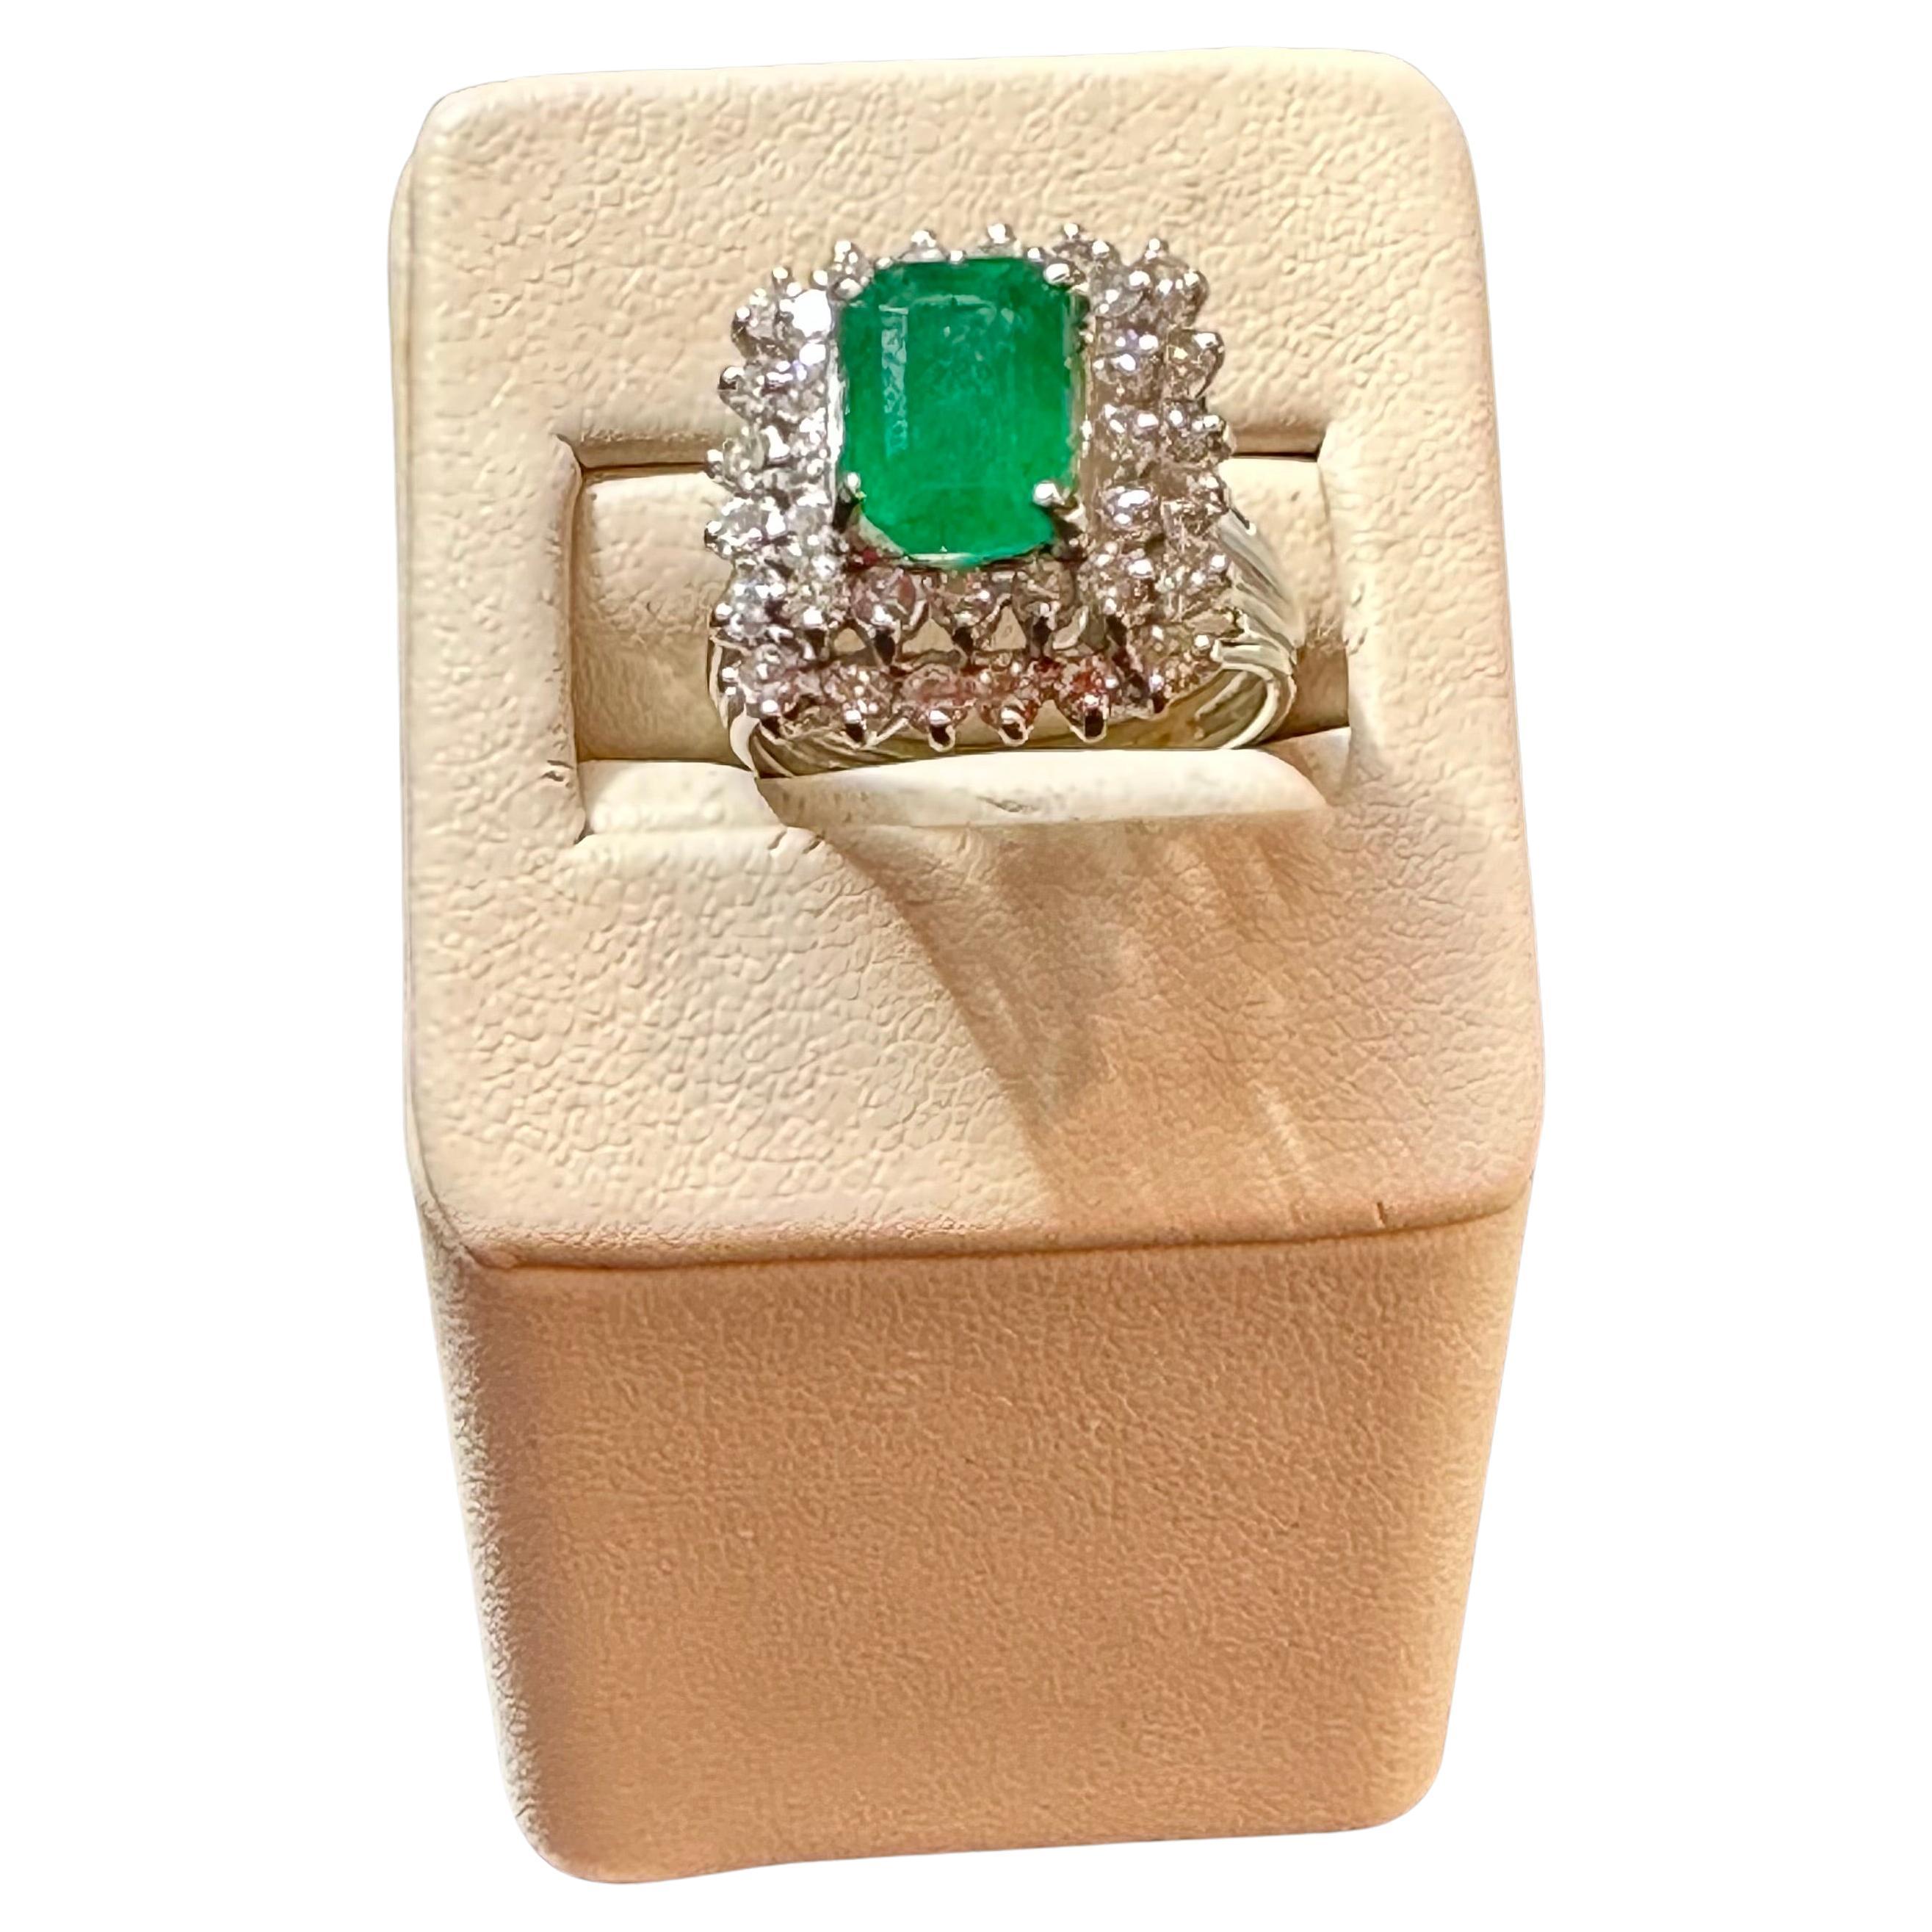 Ein atemberaubender klassischer Ring mit einem 3-karätigen Smaragd im Smaragdschliff und einem Paar glänzender 2-karätiger Diamanten, alle in 14-karätigem Weißgold gefasst. Der Smaragd zeichnet sich durch eine exquisite und begehrte Farbe aus und